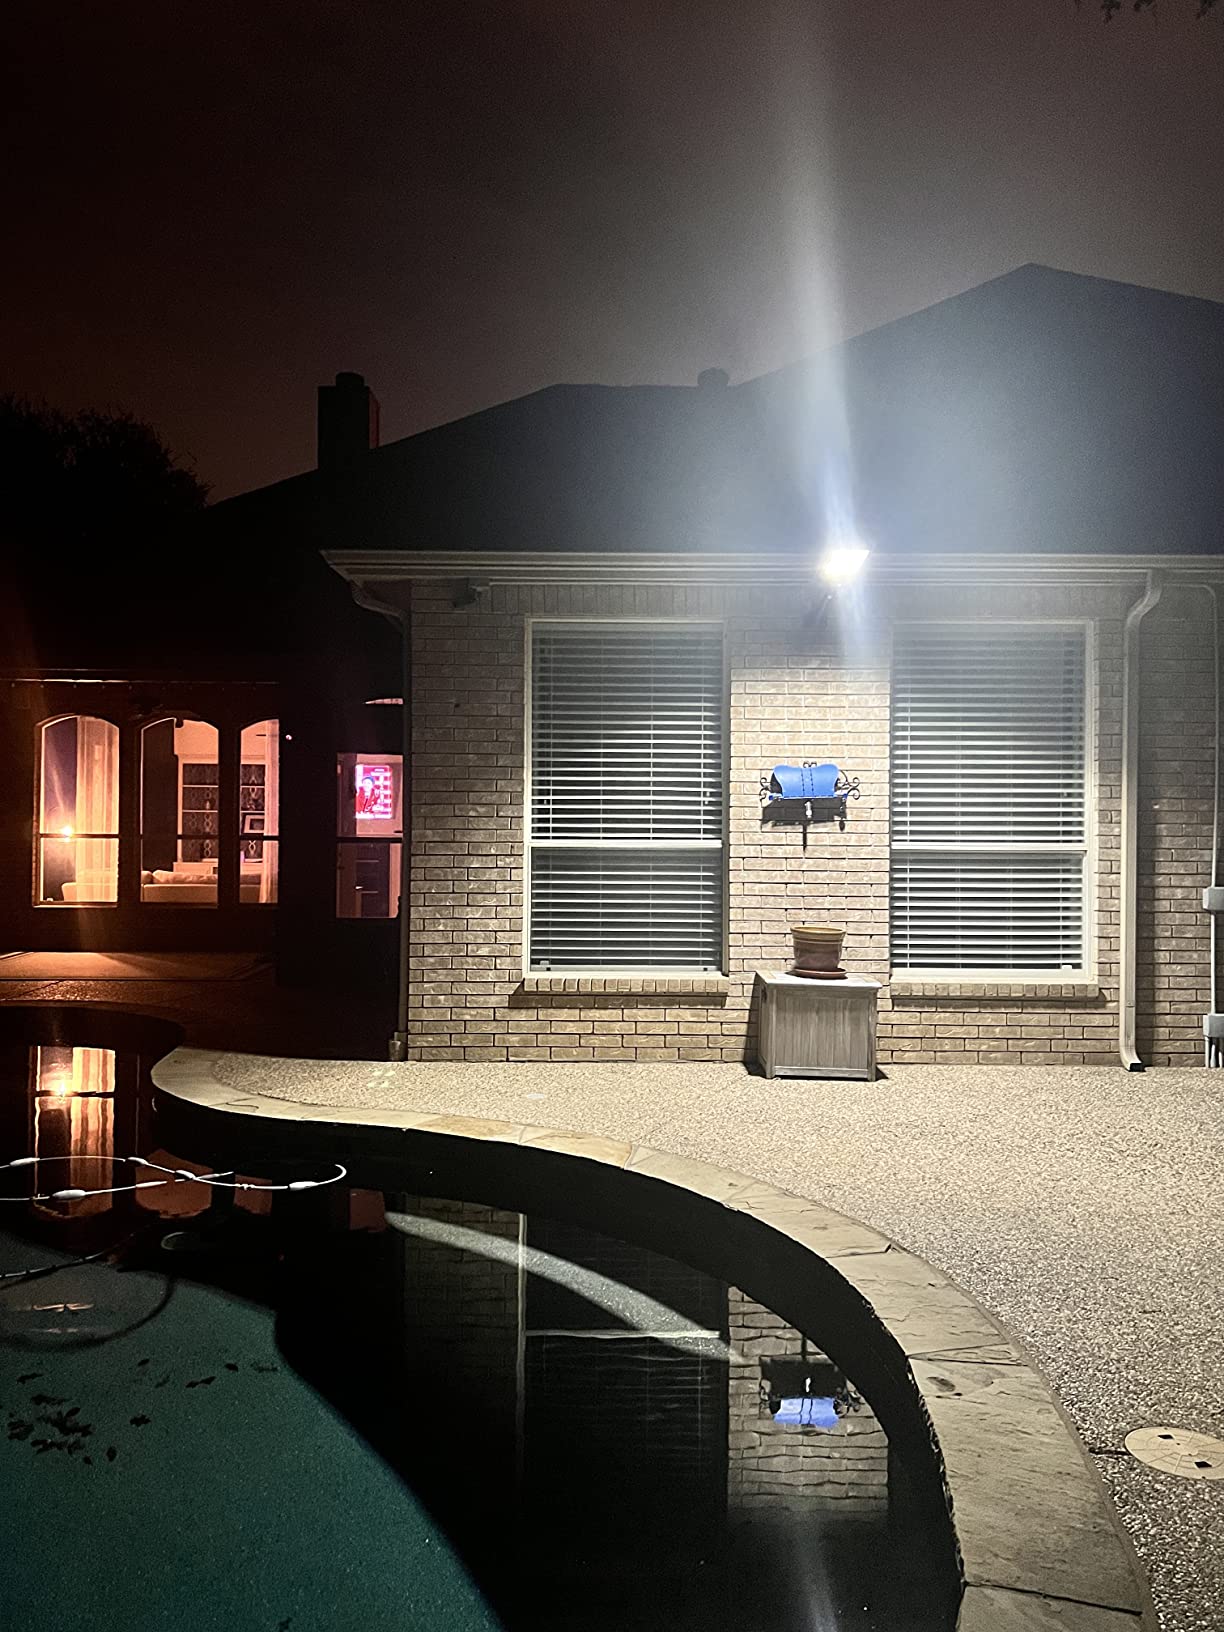 Solar led street light, Motion sensor photo review